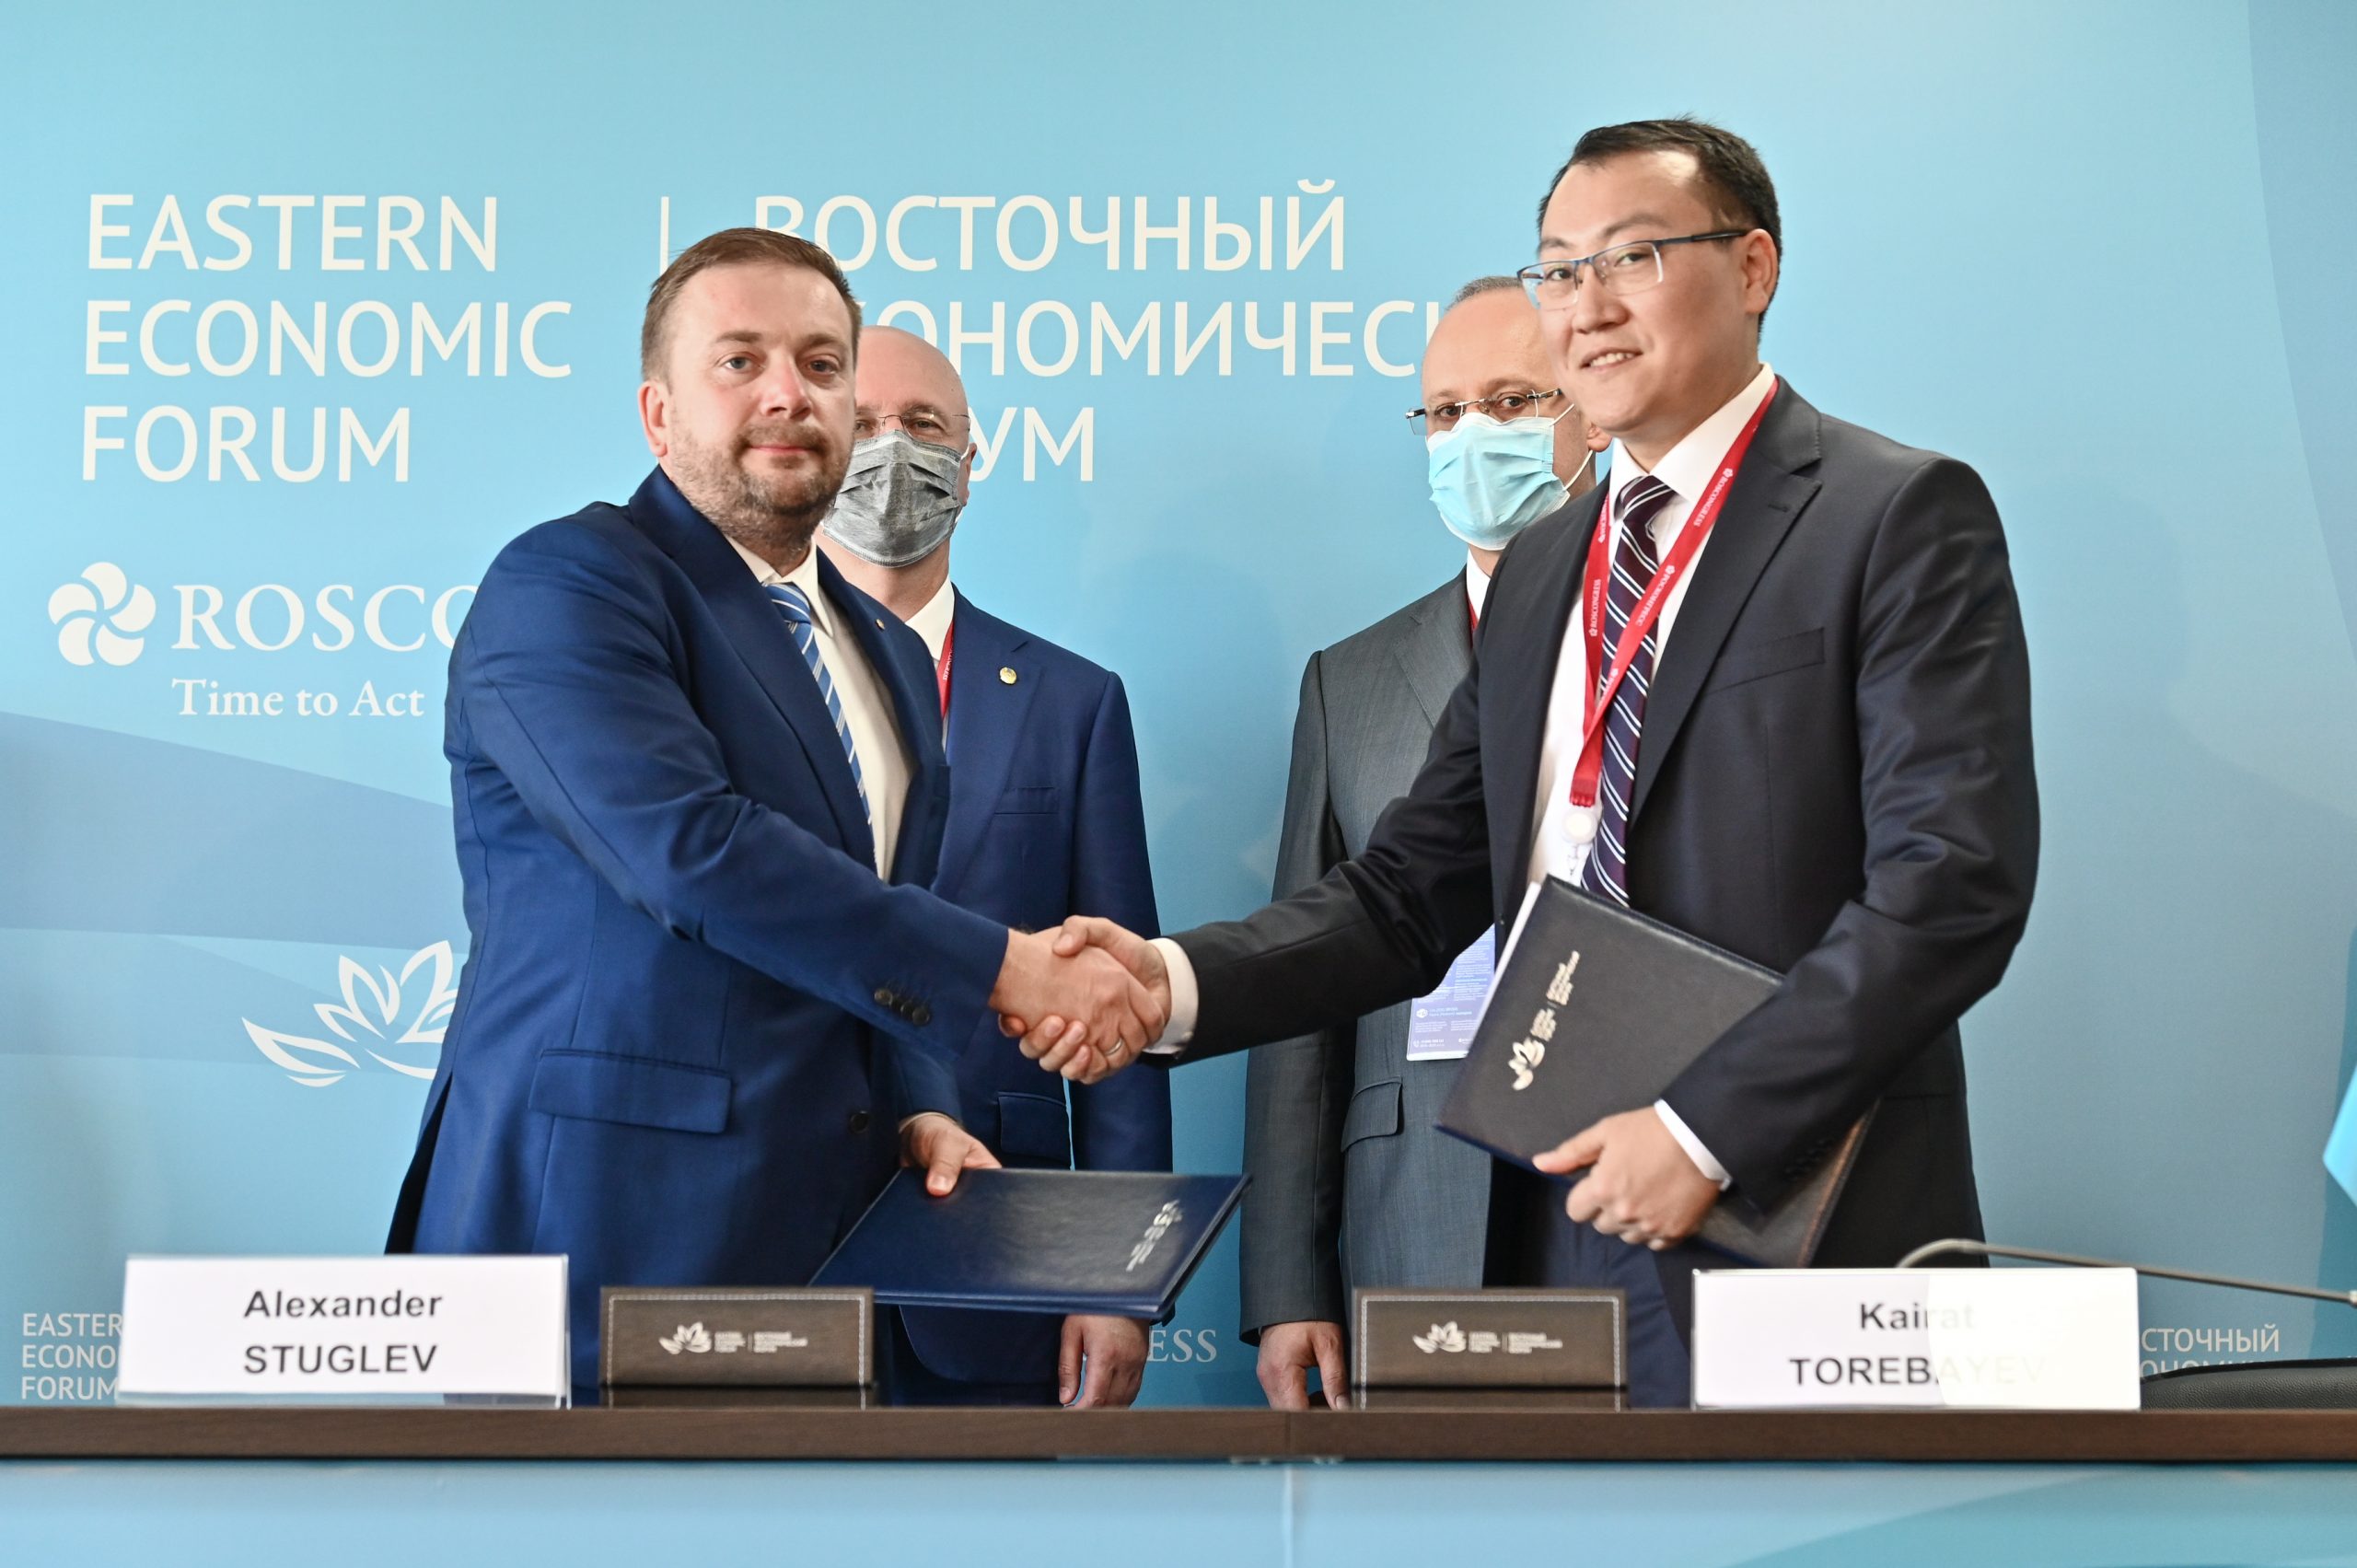 Национальная компания «QazExpoCongress» и Фонд «Росконгресс» подписали соглашение о сотрудничестве